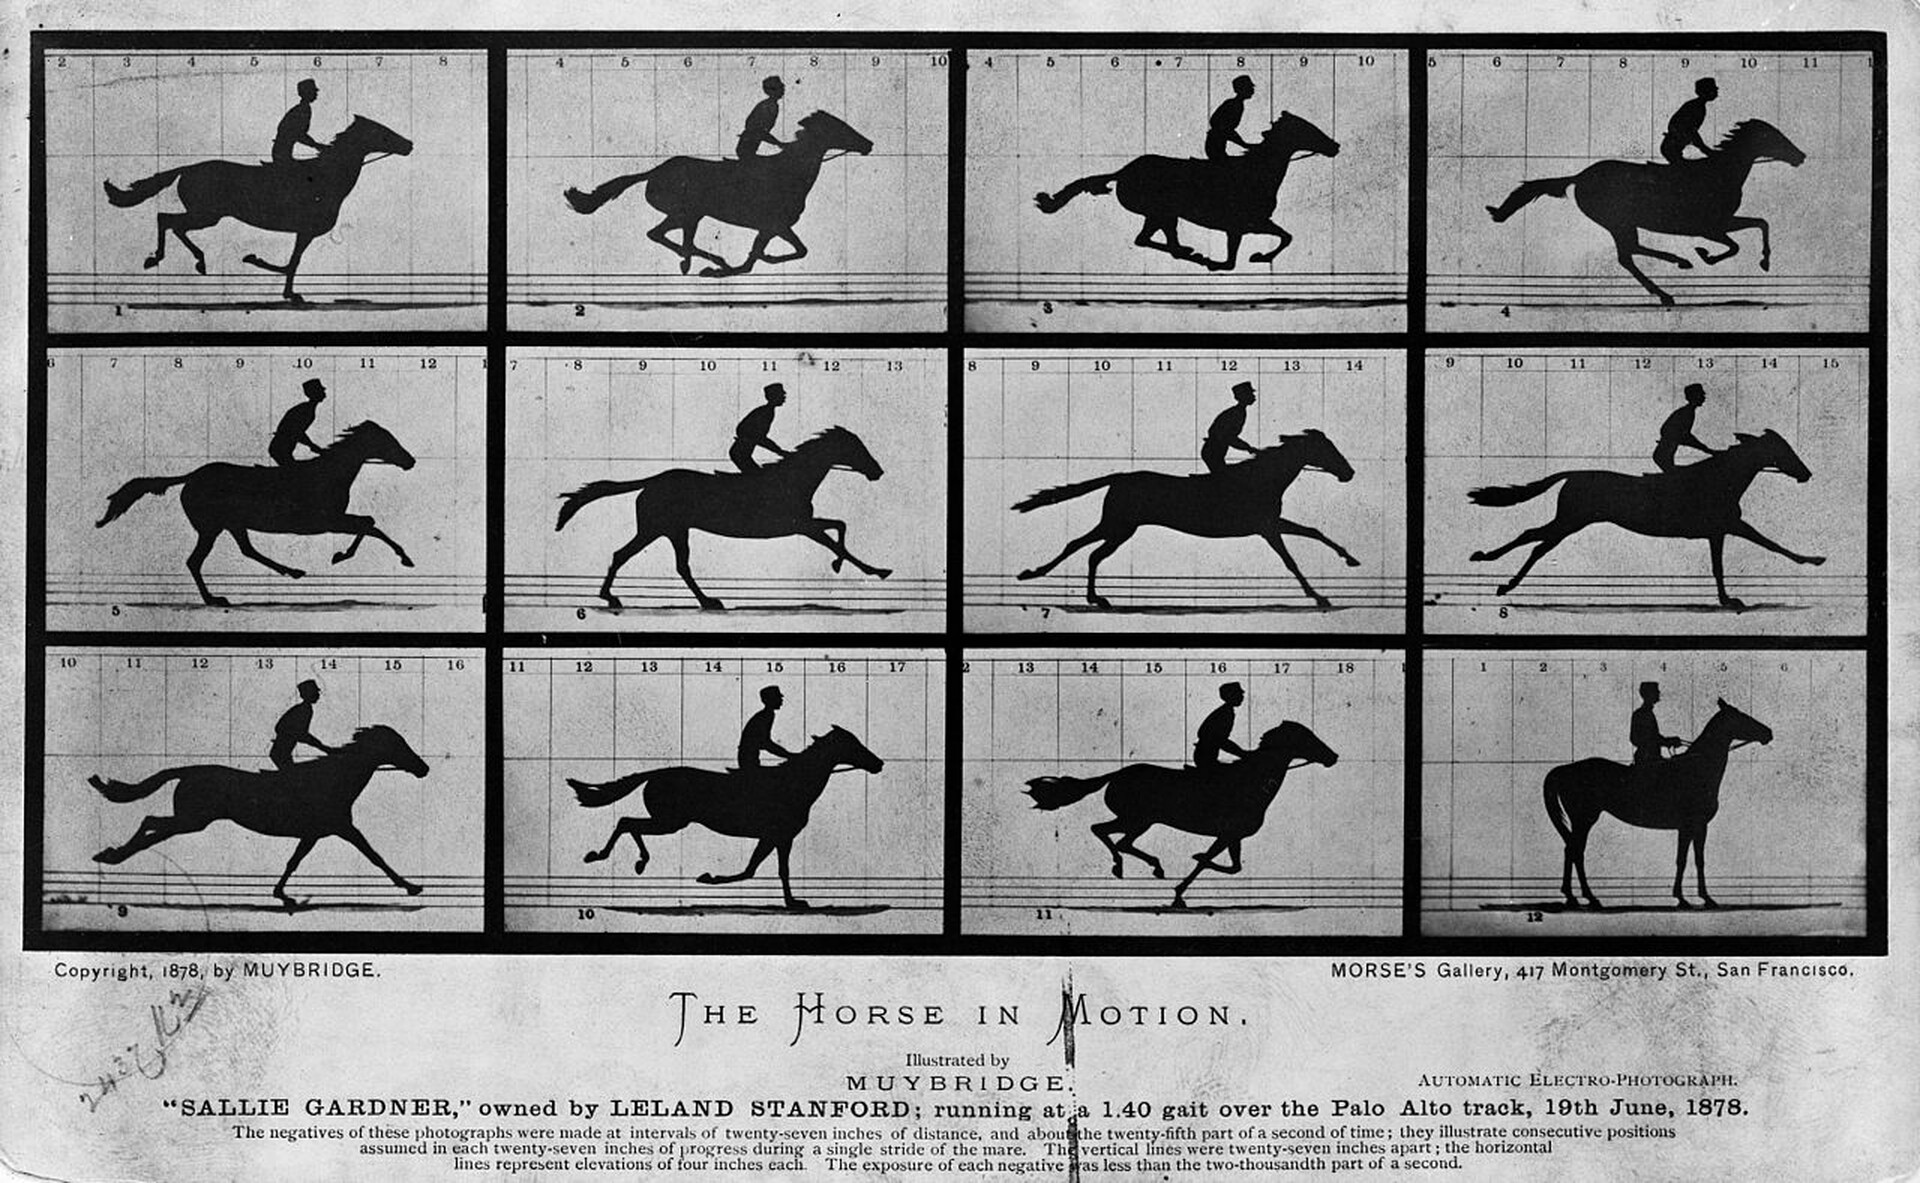  Czarno-biała karta zawierająca 12 zdjęć konia w galopie. Każde zdjęcie pokazuje kolejny ruch ciała konia, przez co po przypominają stopklatki z filmu przedstawiającego biegnące zwierzę. 